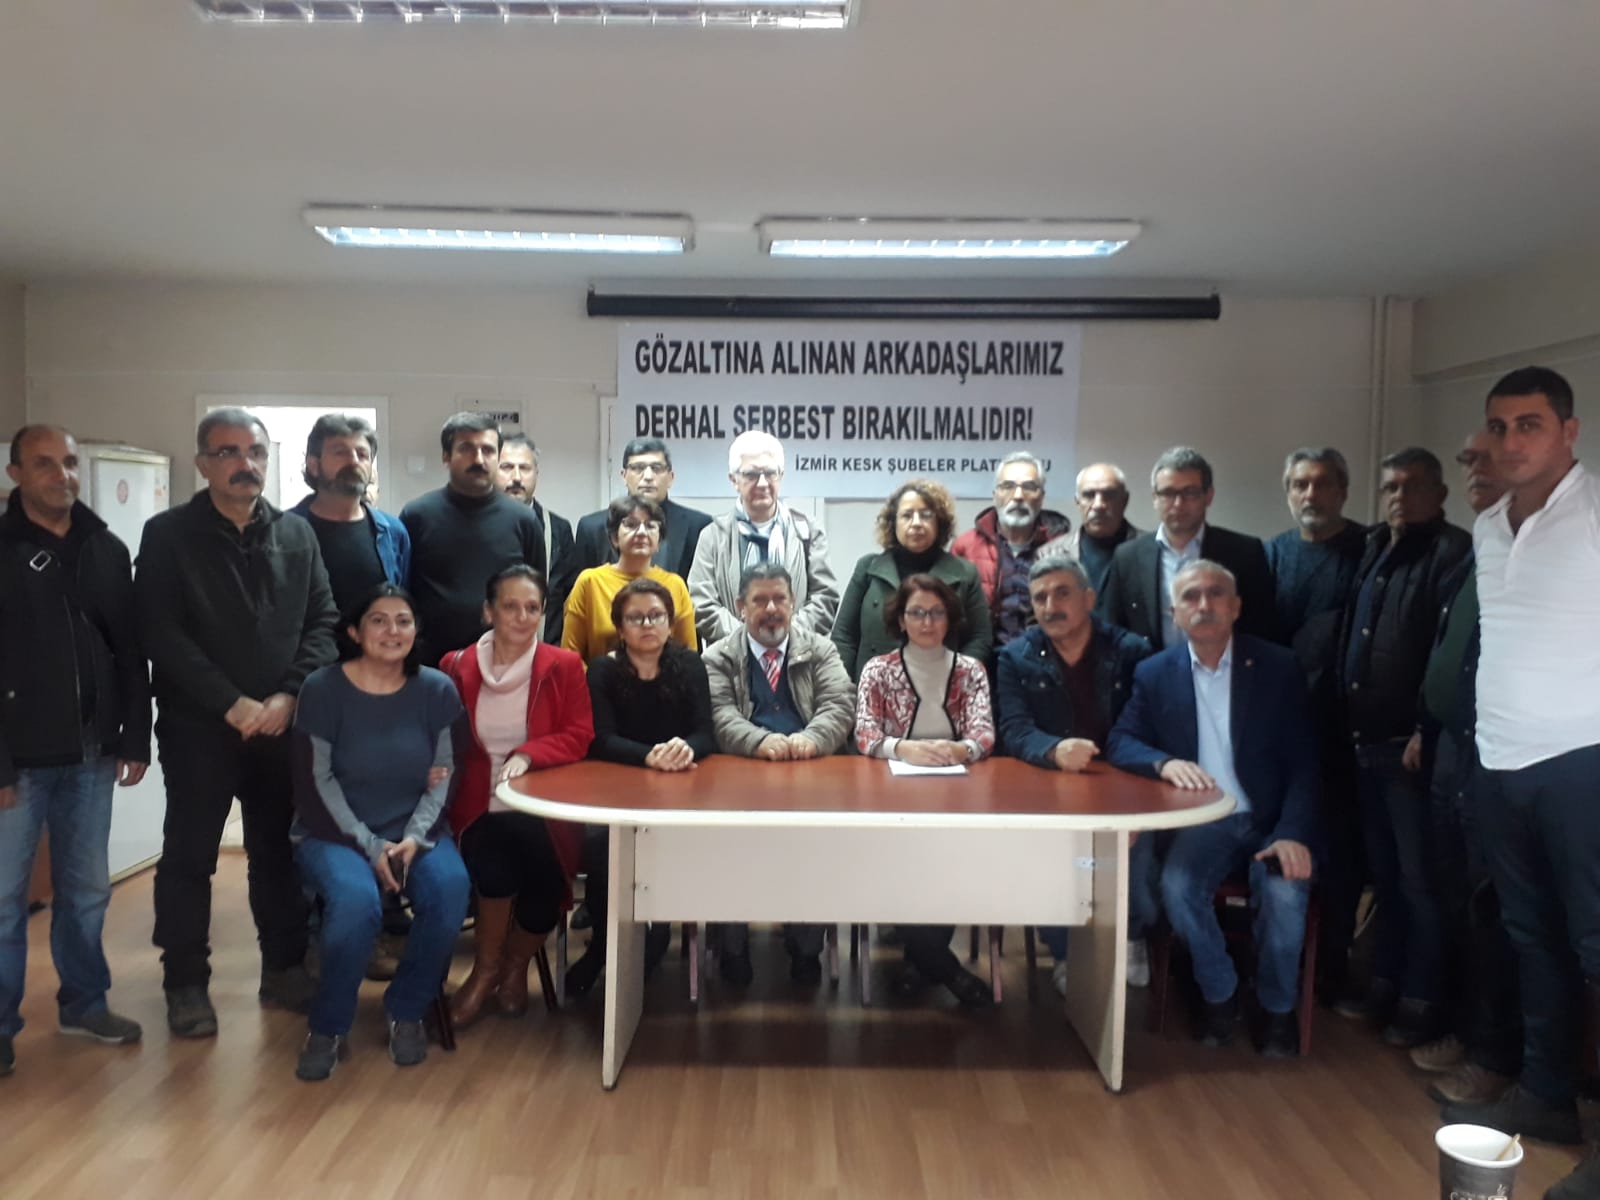 KESK İzmir Şubeler Platformu: Gözaltına Alınan Arkadaşlarımız Derhal Serbest Bırakılsın